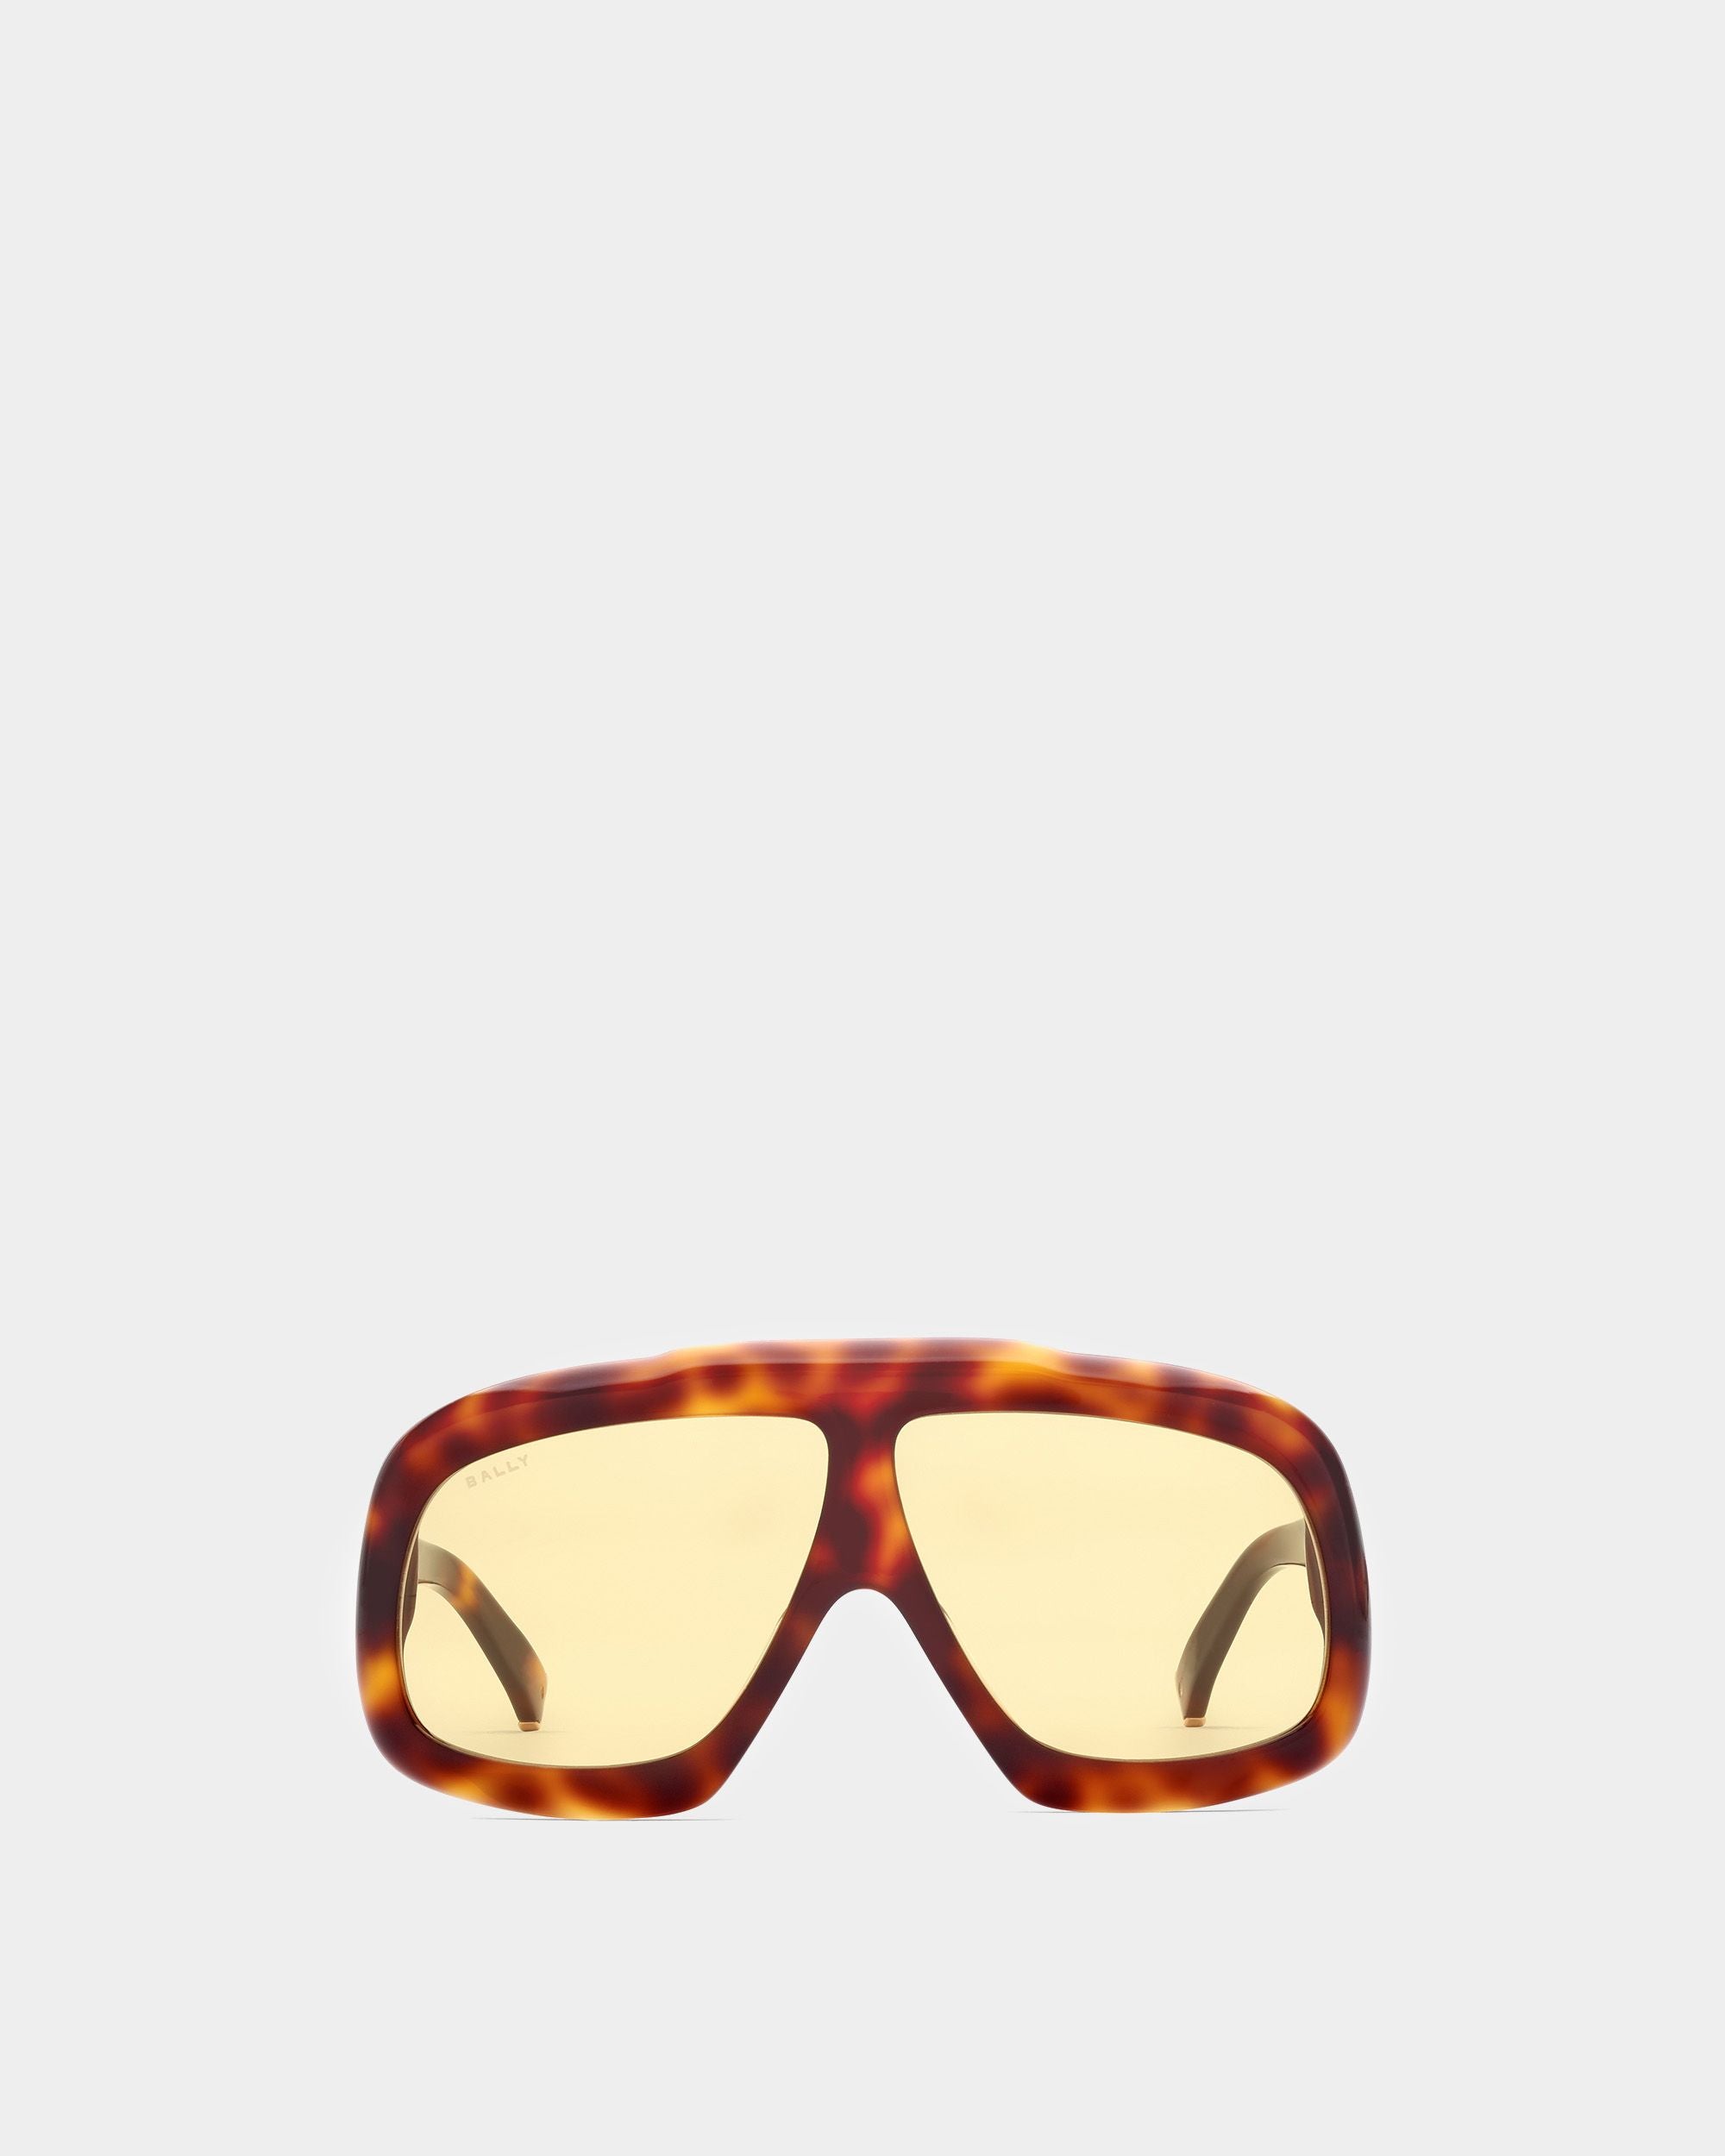 Eyger Sonnenbrille | Unisex-Accessoires | Havanna-braunes Acetat mit gelben Gläsern | Bally | Still Life Vorderseite